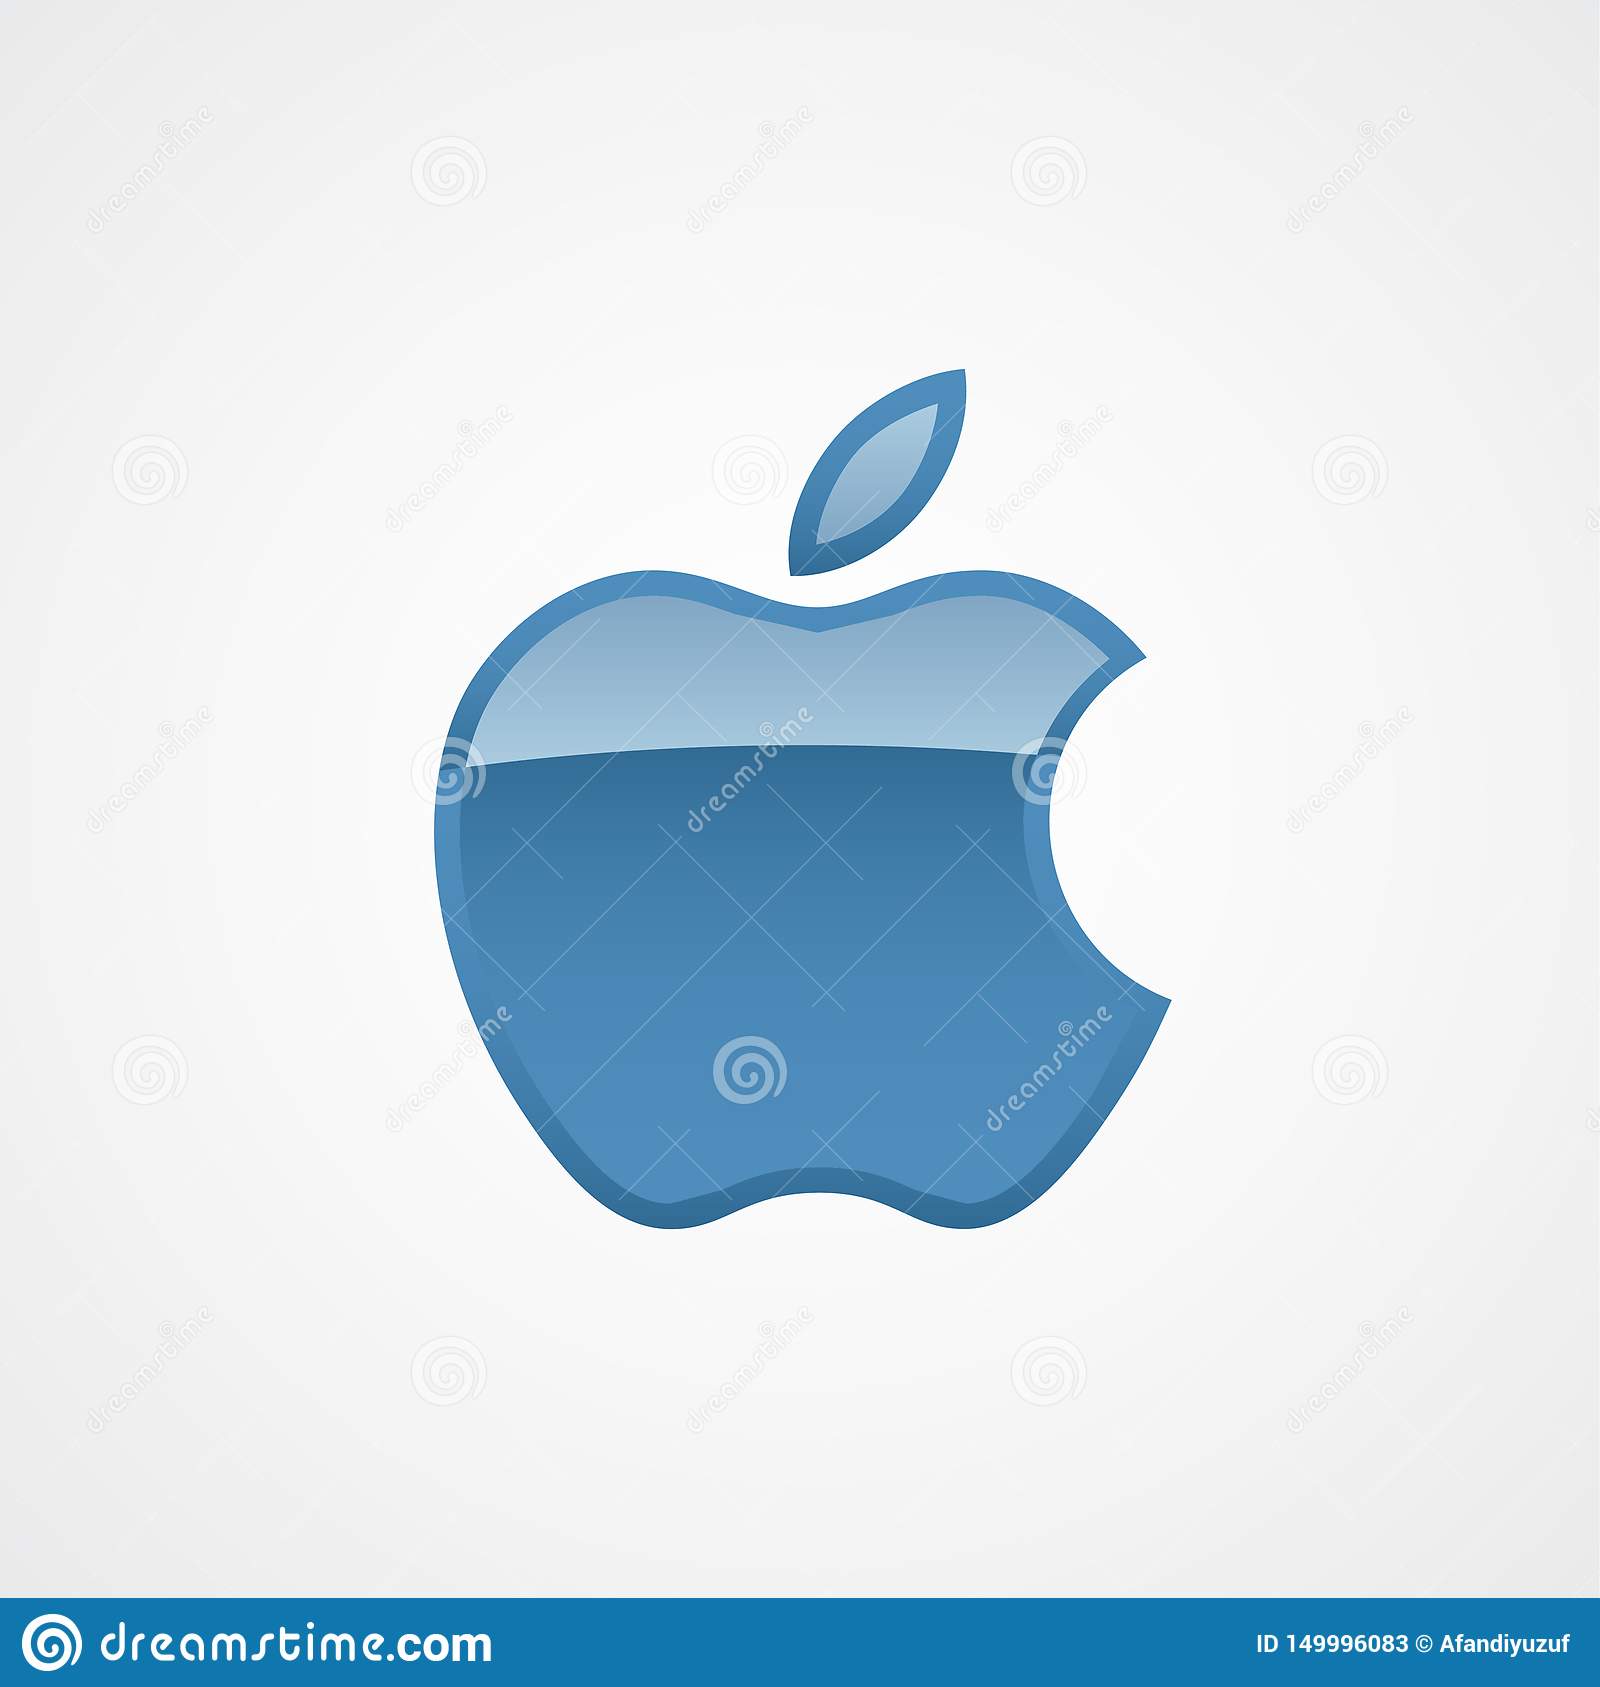 vector 2016 for mac logo